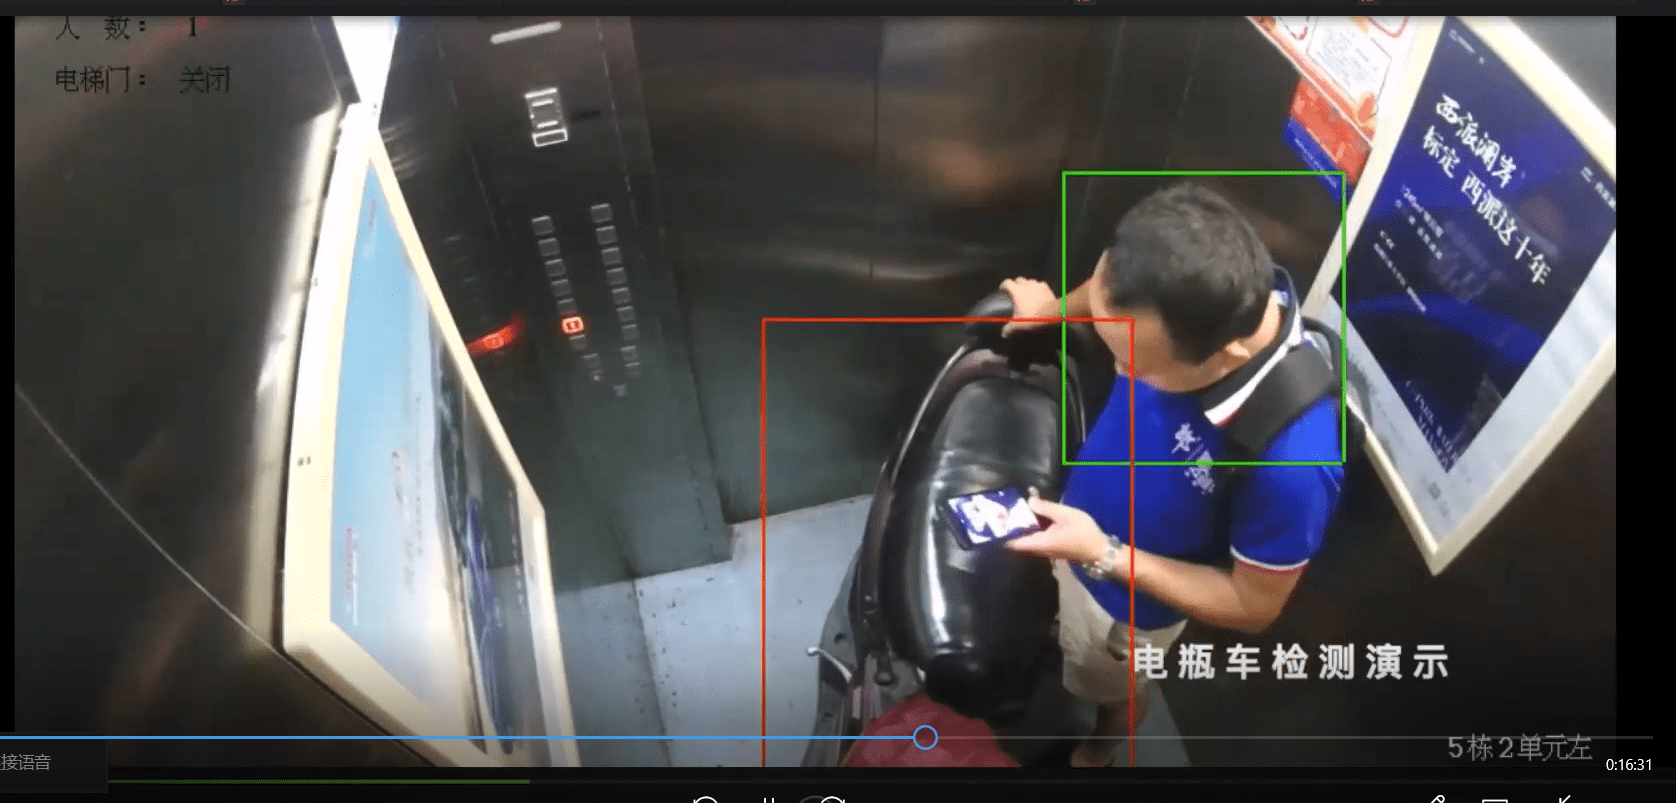 禁止电动车进电梯!四步教你安装电梯电动车识别摄像头